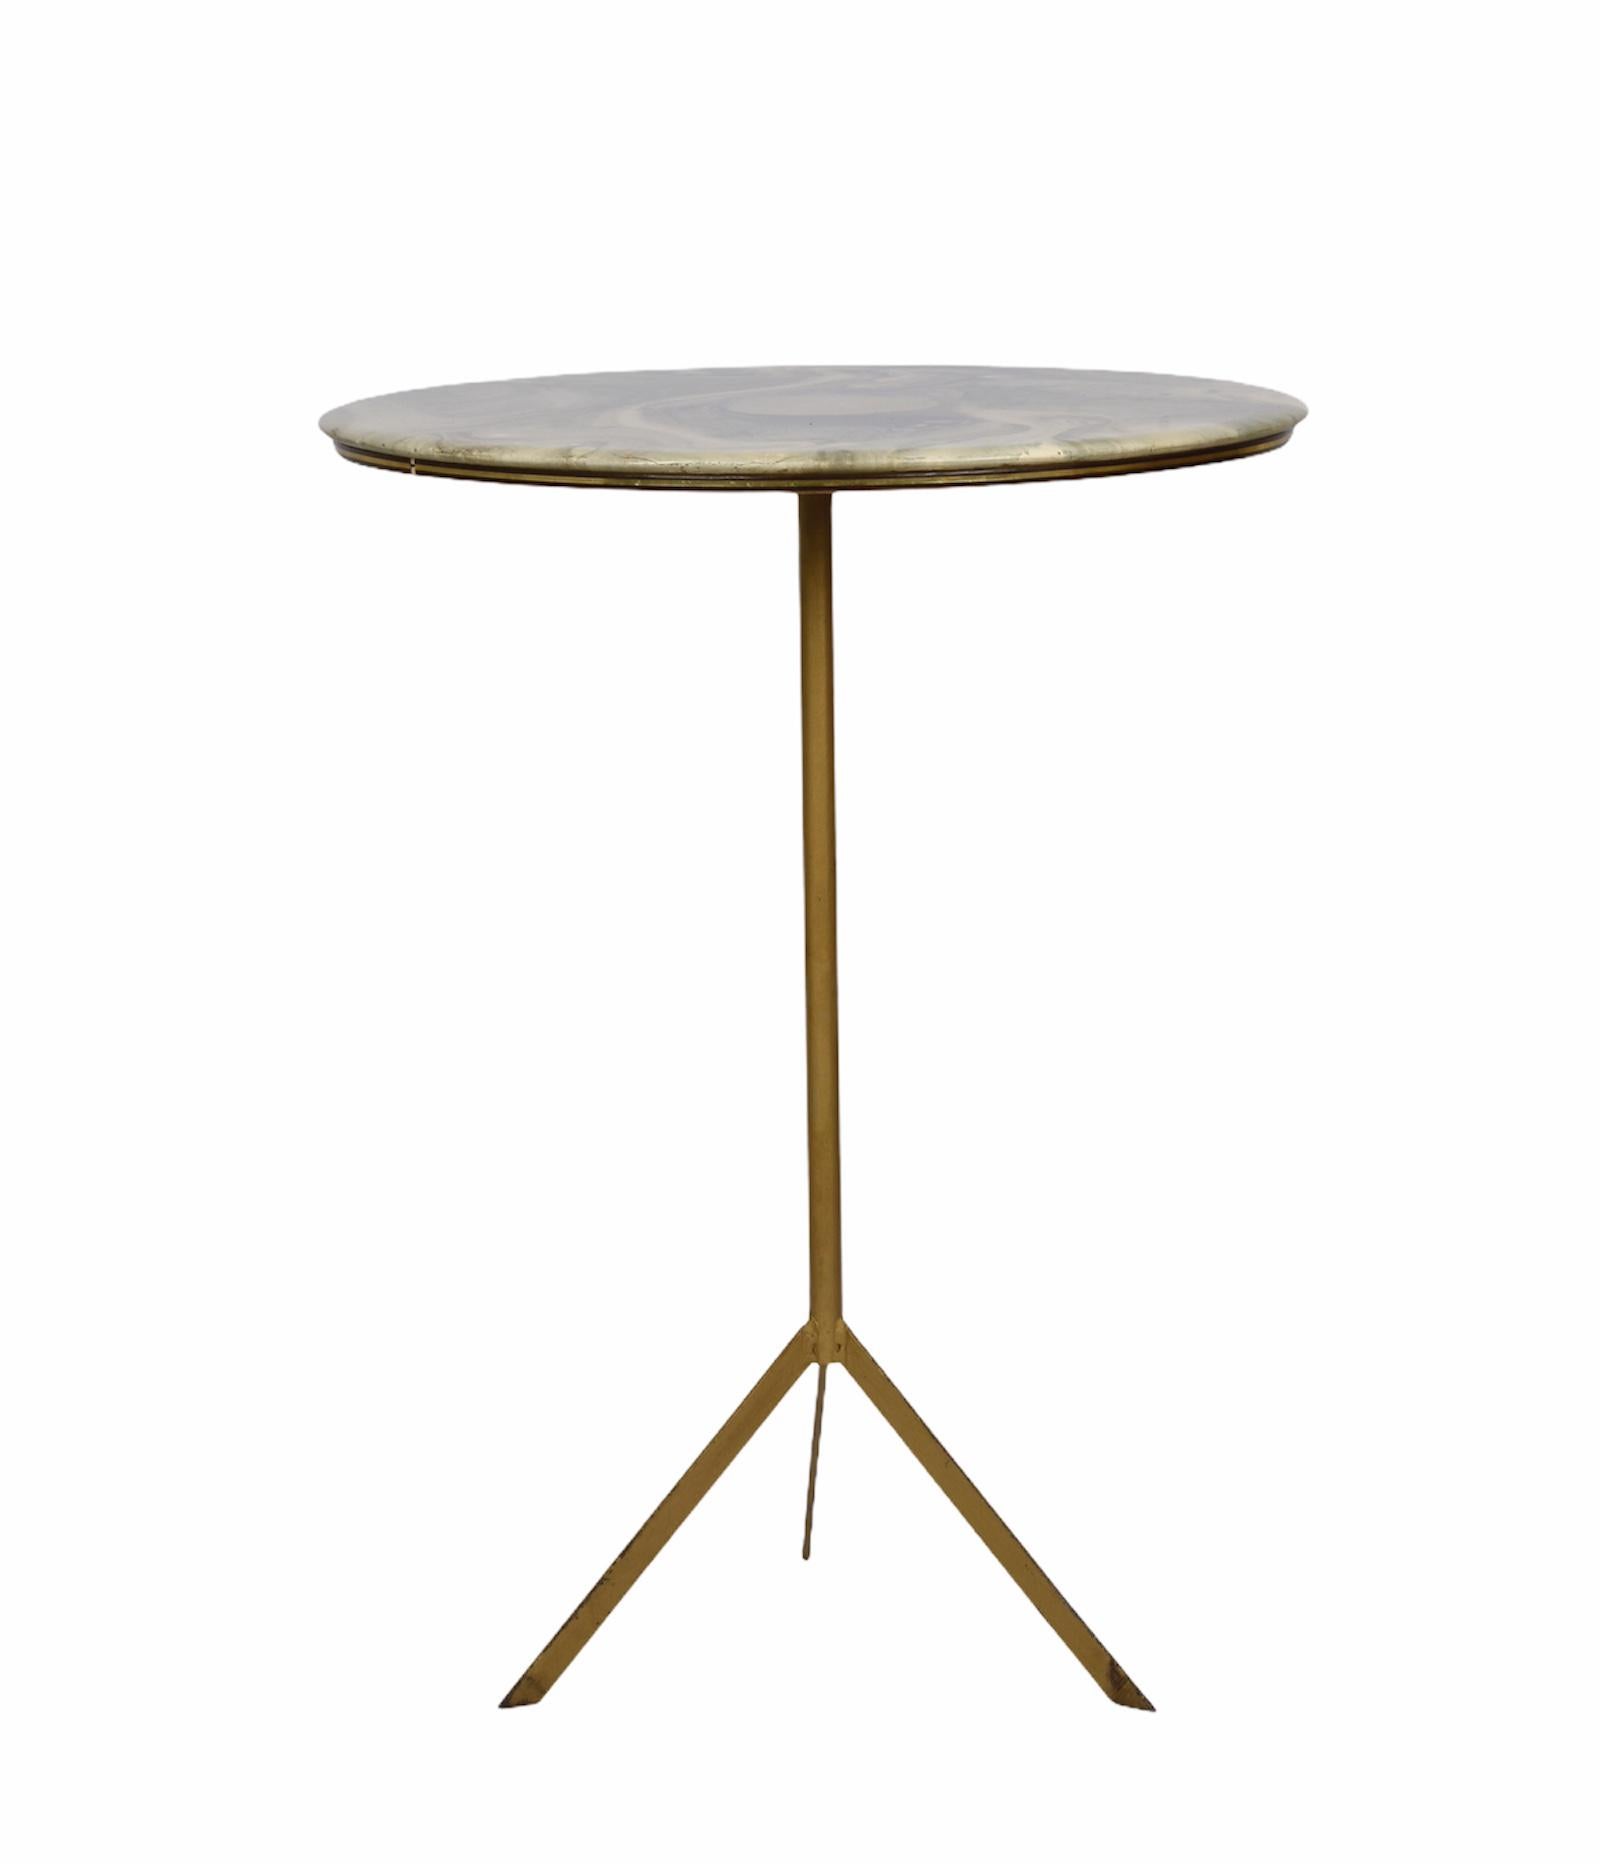 Étonnante table ronde Guéridon du milieu du siècle avec plateau en résine de marbre et métal. Cette pièce magnifique a été conçue en Italie dans les années 1950.

Cette superbe pièce présente un fantastique plateau en résine marbrée et une